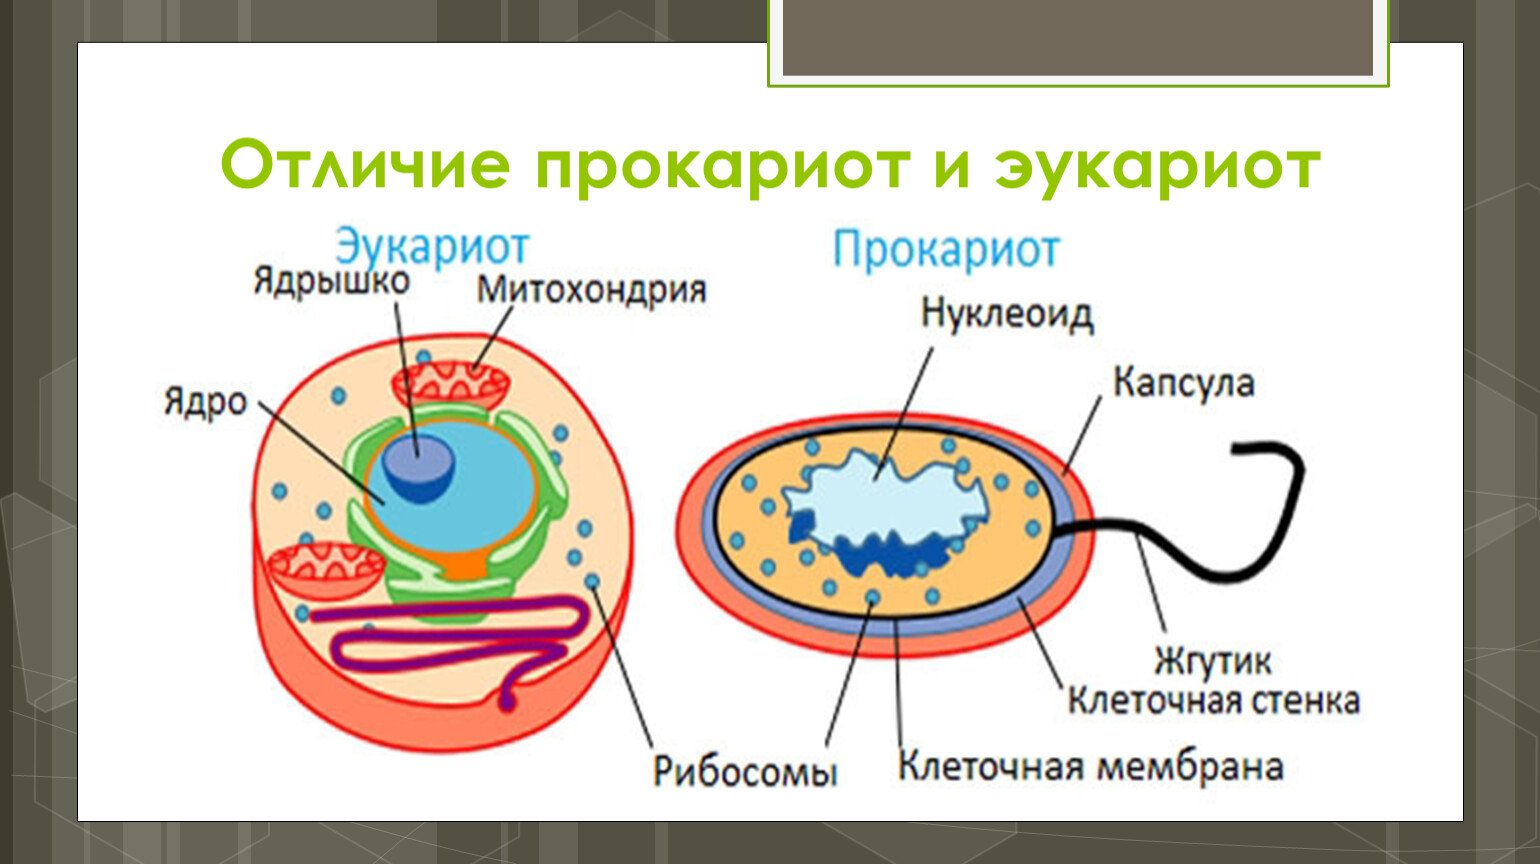 Сходства и различия прокариот. Отличие прокариотической клетки от эукариотической клетки. Строение прокариот и эукариот. Клетка бактерий и эукариот. Различие эукариот от прокариот.